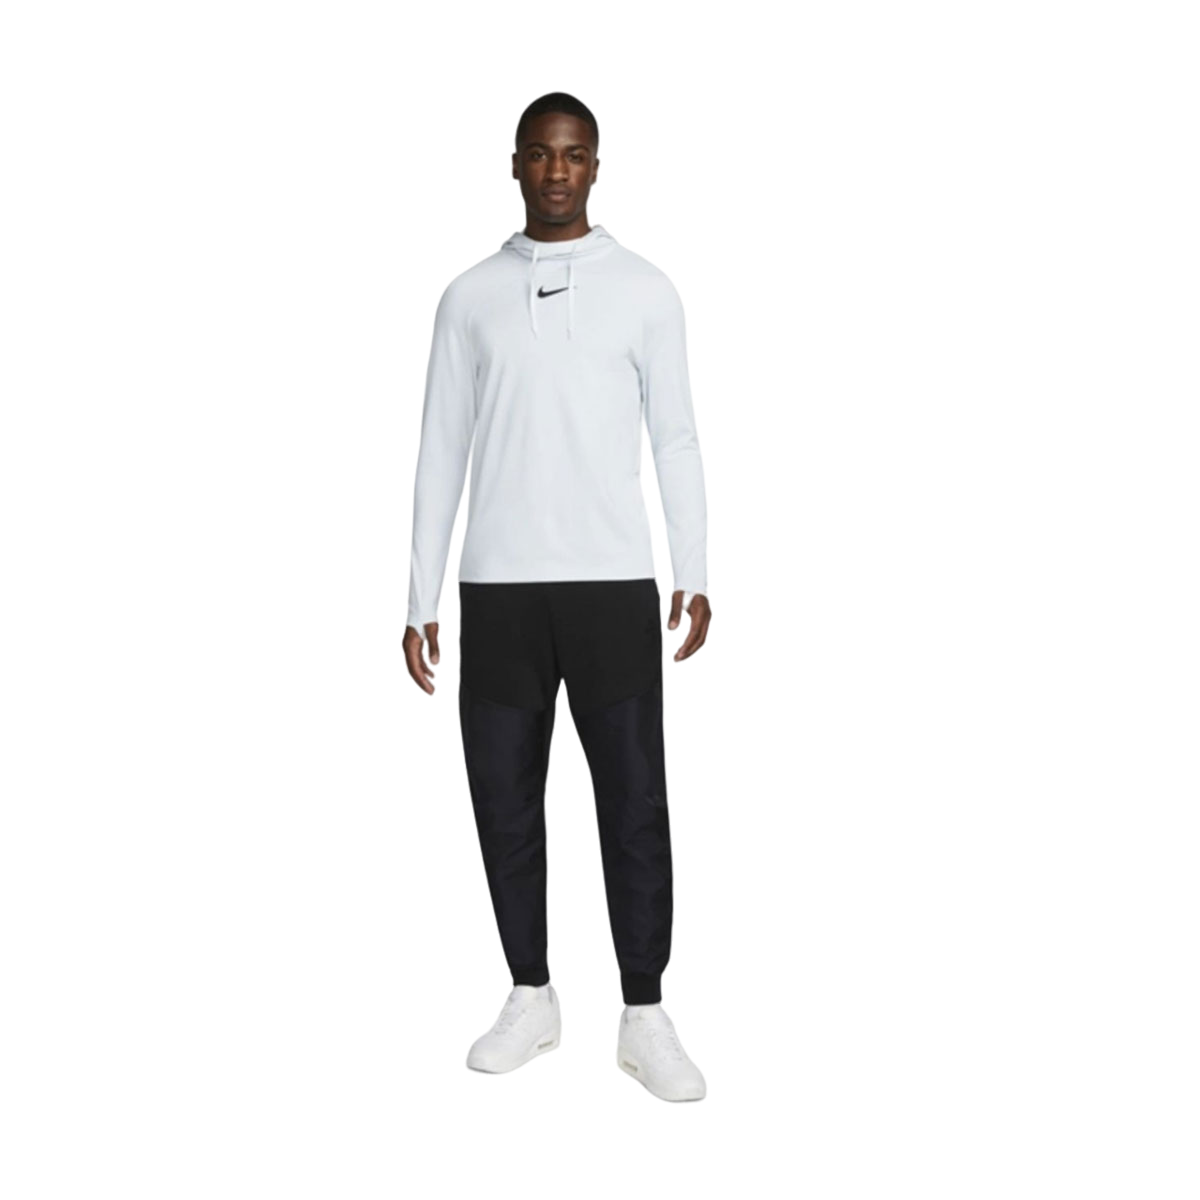 Nike Men's Dri-FIT Pullover Hoodie